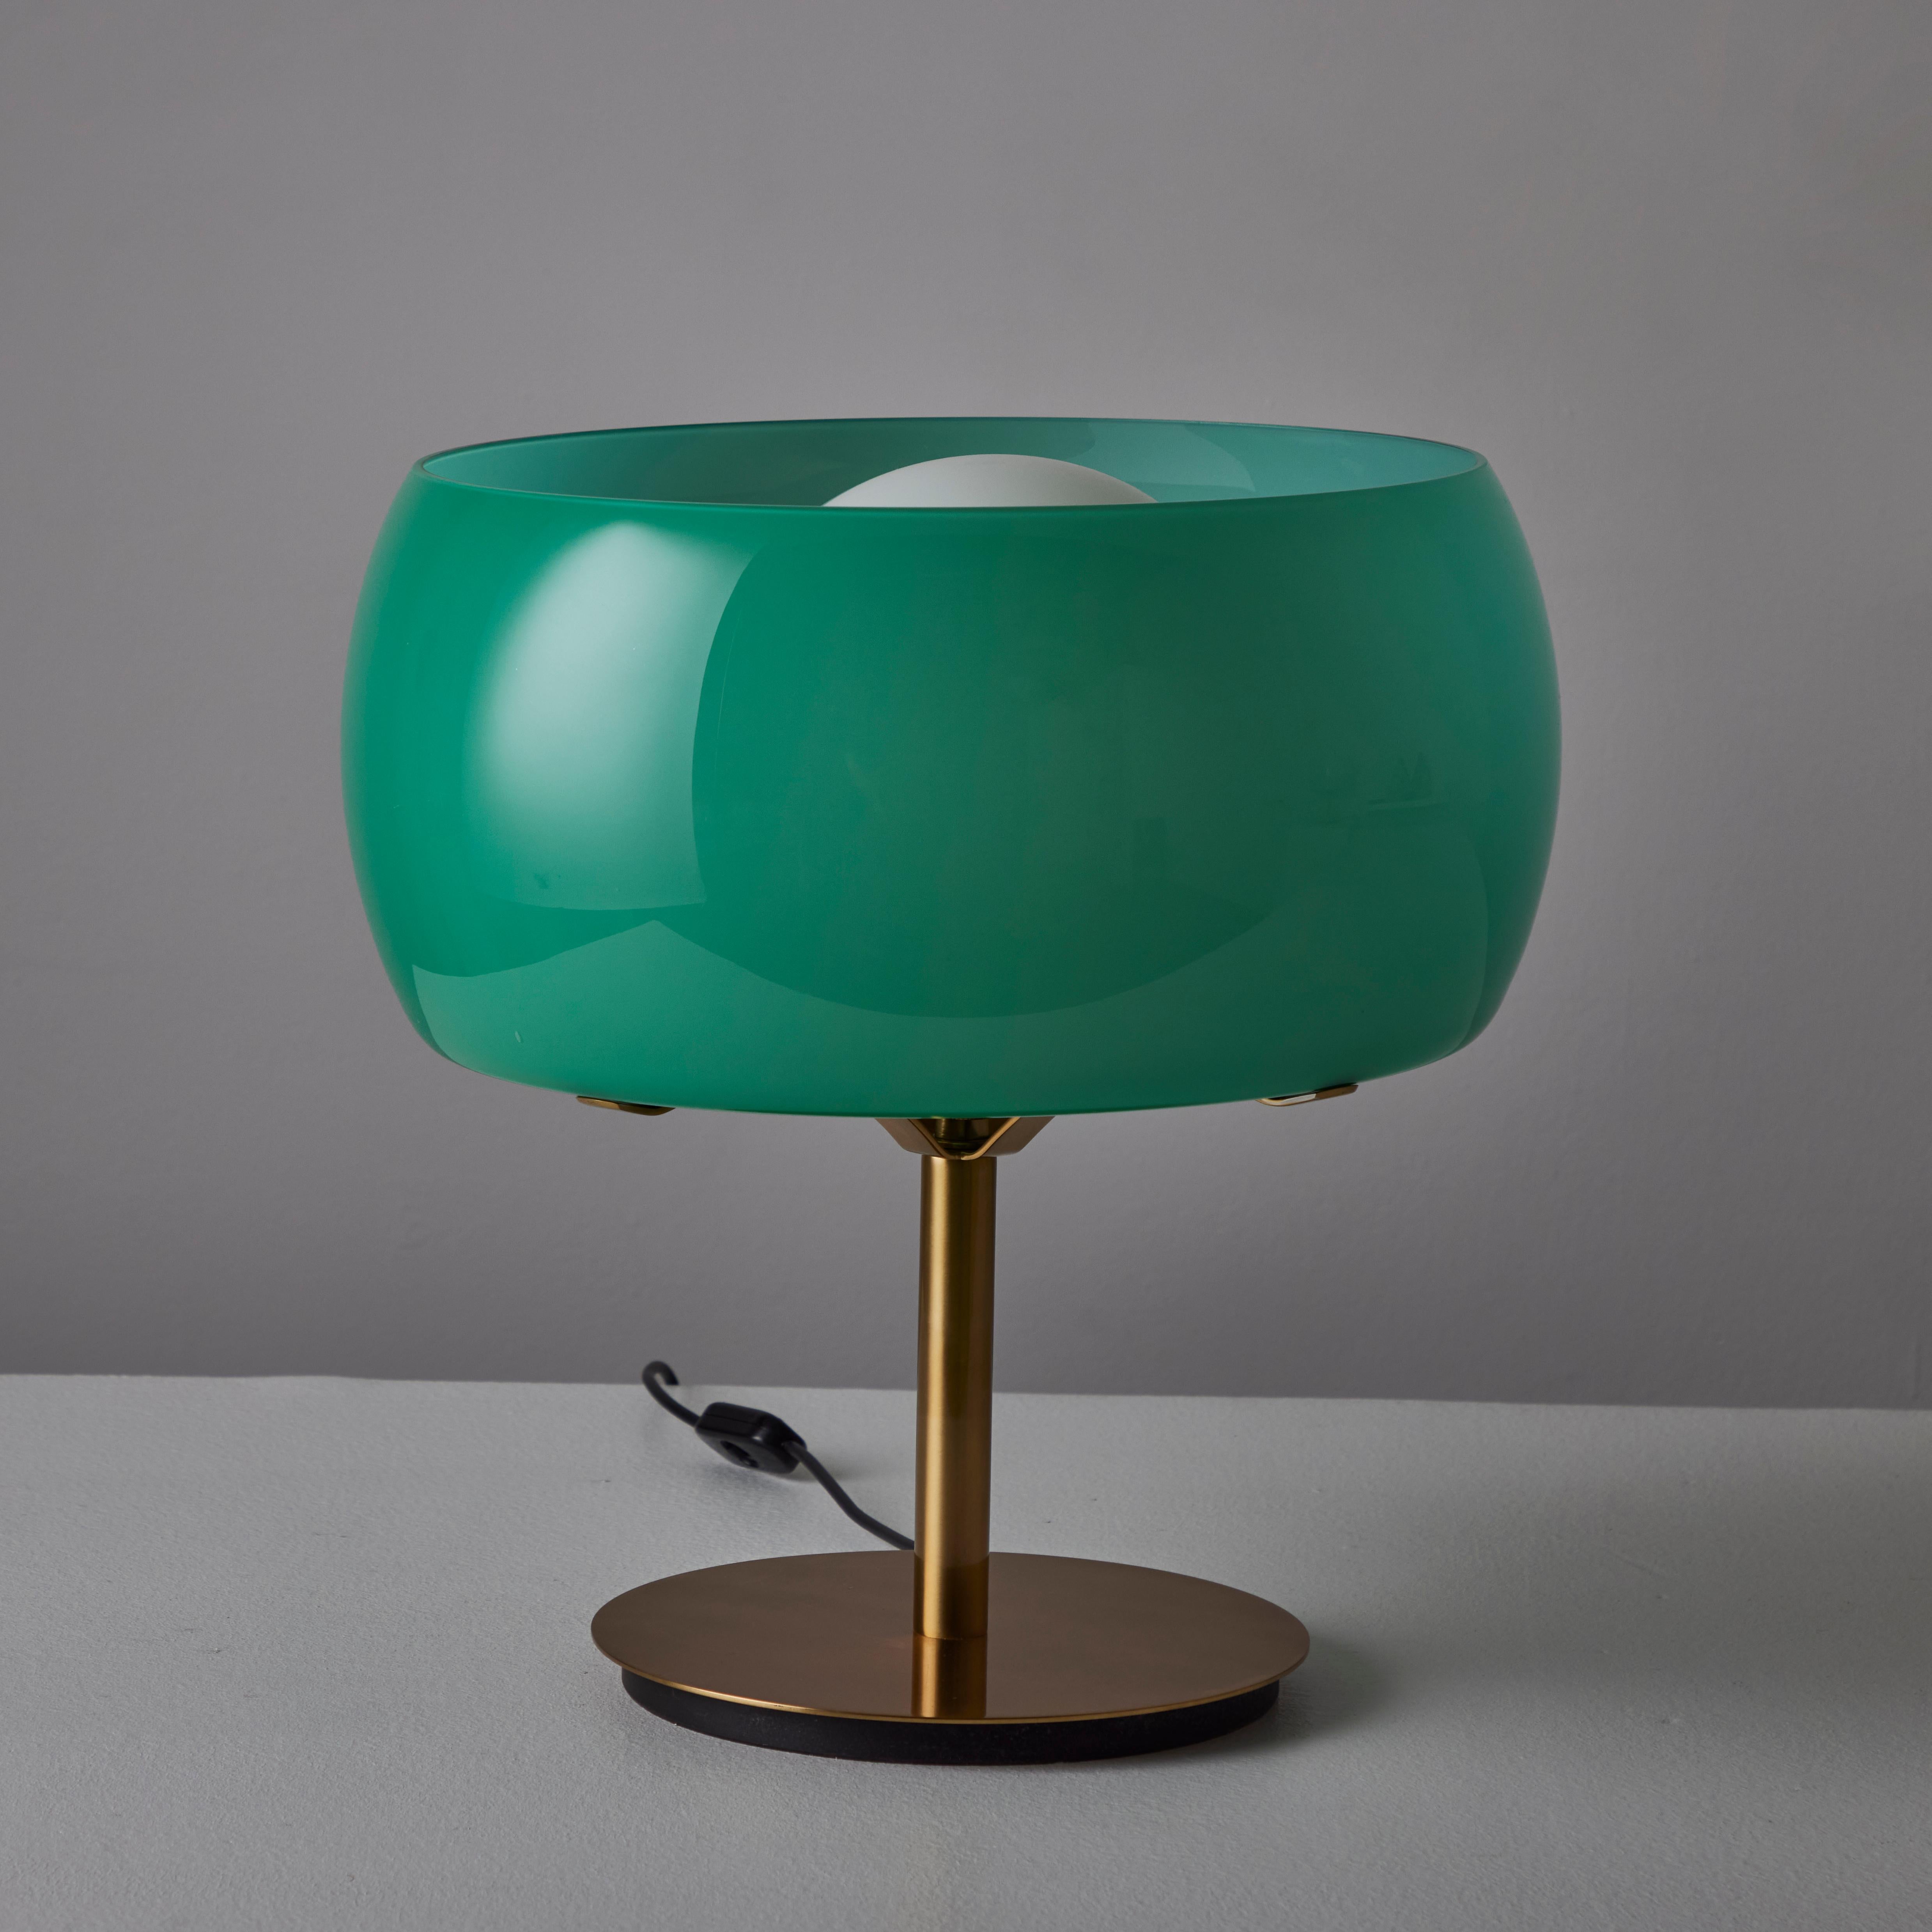 Rare paire de lampes de table 'Erse' de Vico Magistretti pour Artemide. Créé et fabriqué en Italie, 1964. La base et la tige de la lampe sont en laiton poli. L'abat-jour orbital externe est composé d'un verre de couleur sarcelle qui entoure un globe